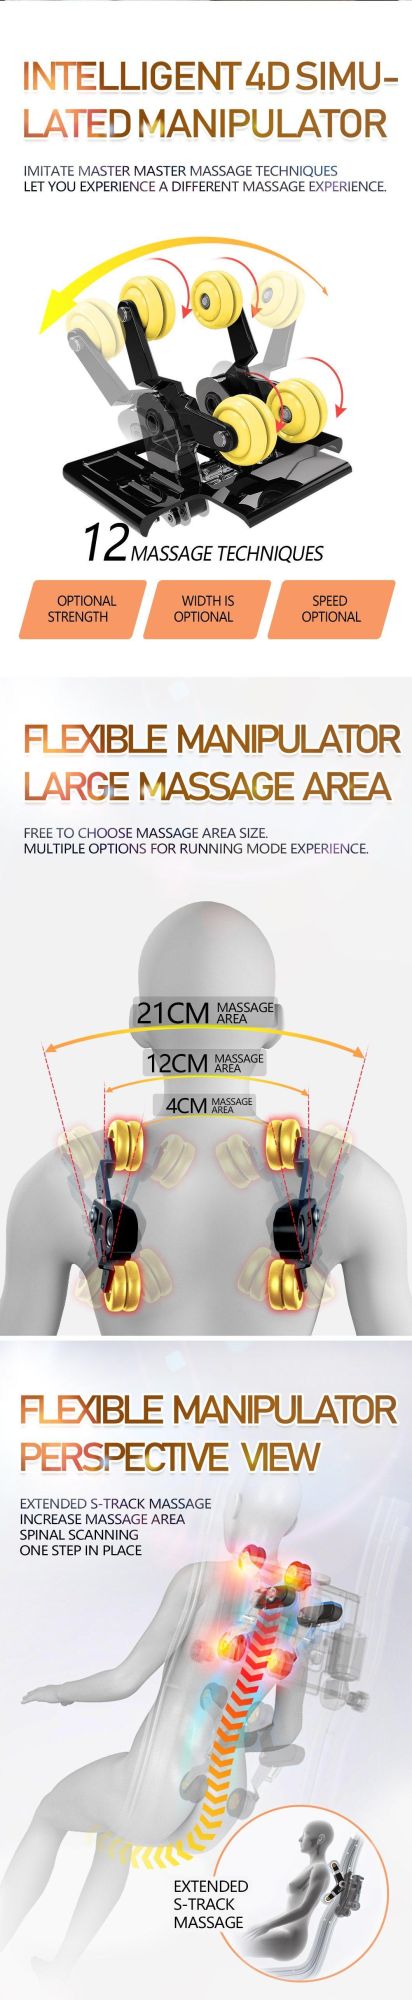 New Design Space Capsule Automatic SL-Track Zero Gravity Whole Body Shiatsu Best Massage Chair